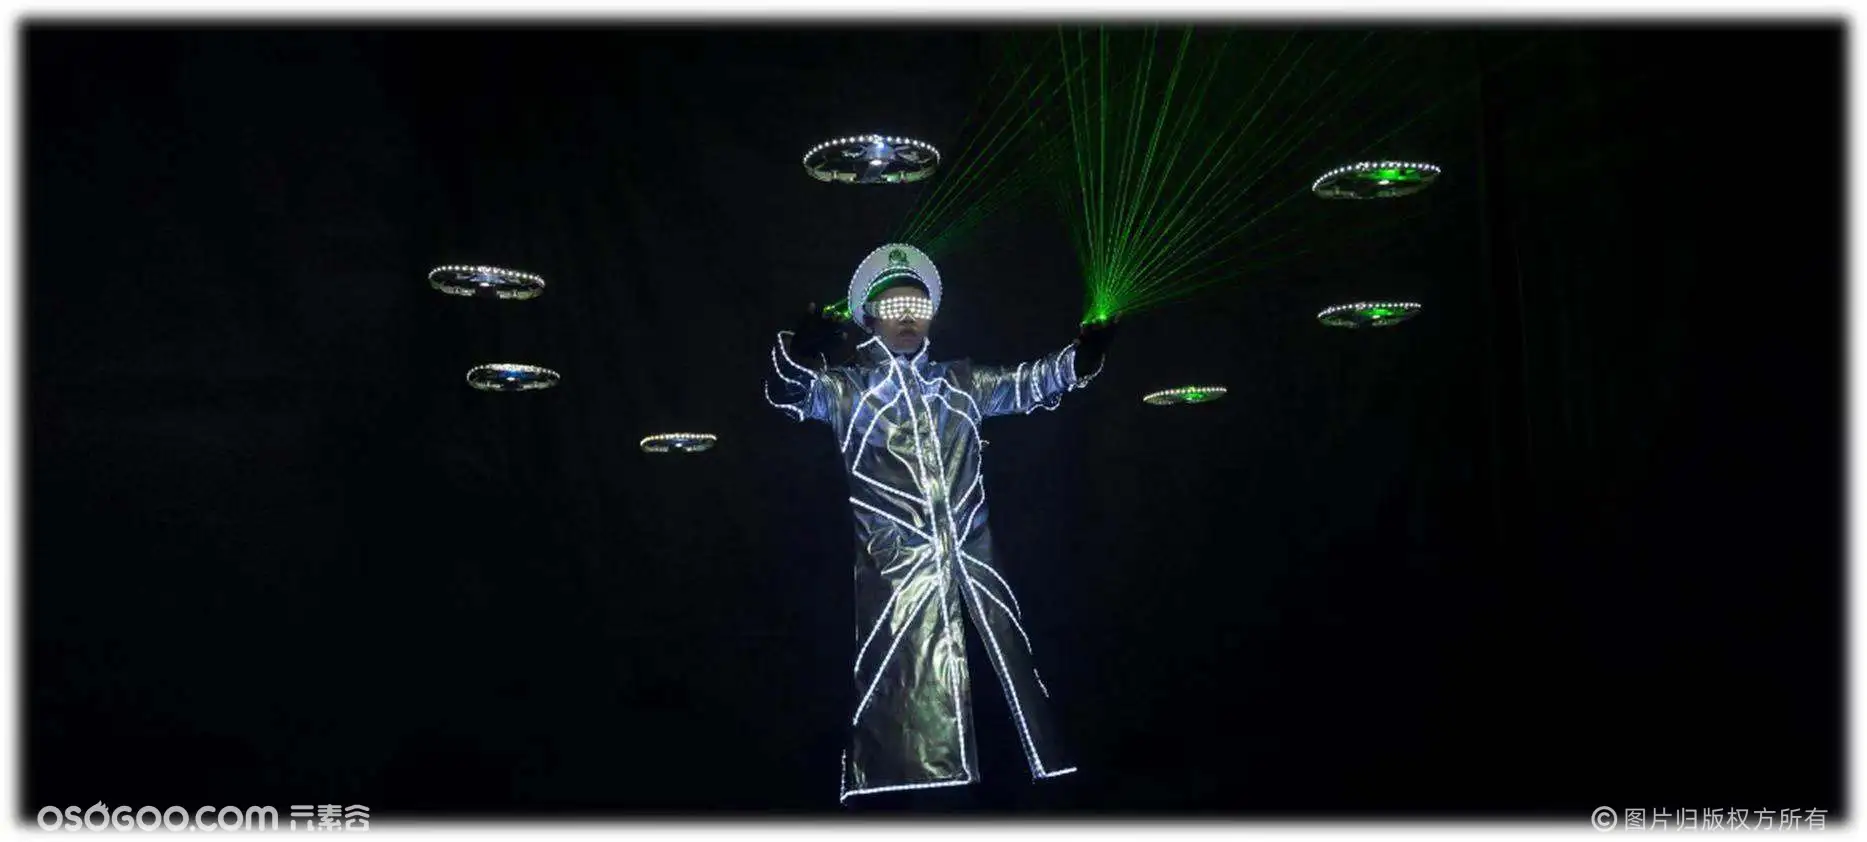 无人机与舞蹈的结合，一场科技与艺术结合的视觉盛宴